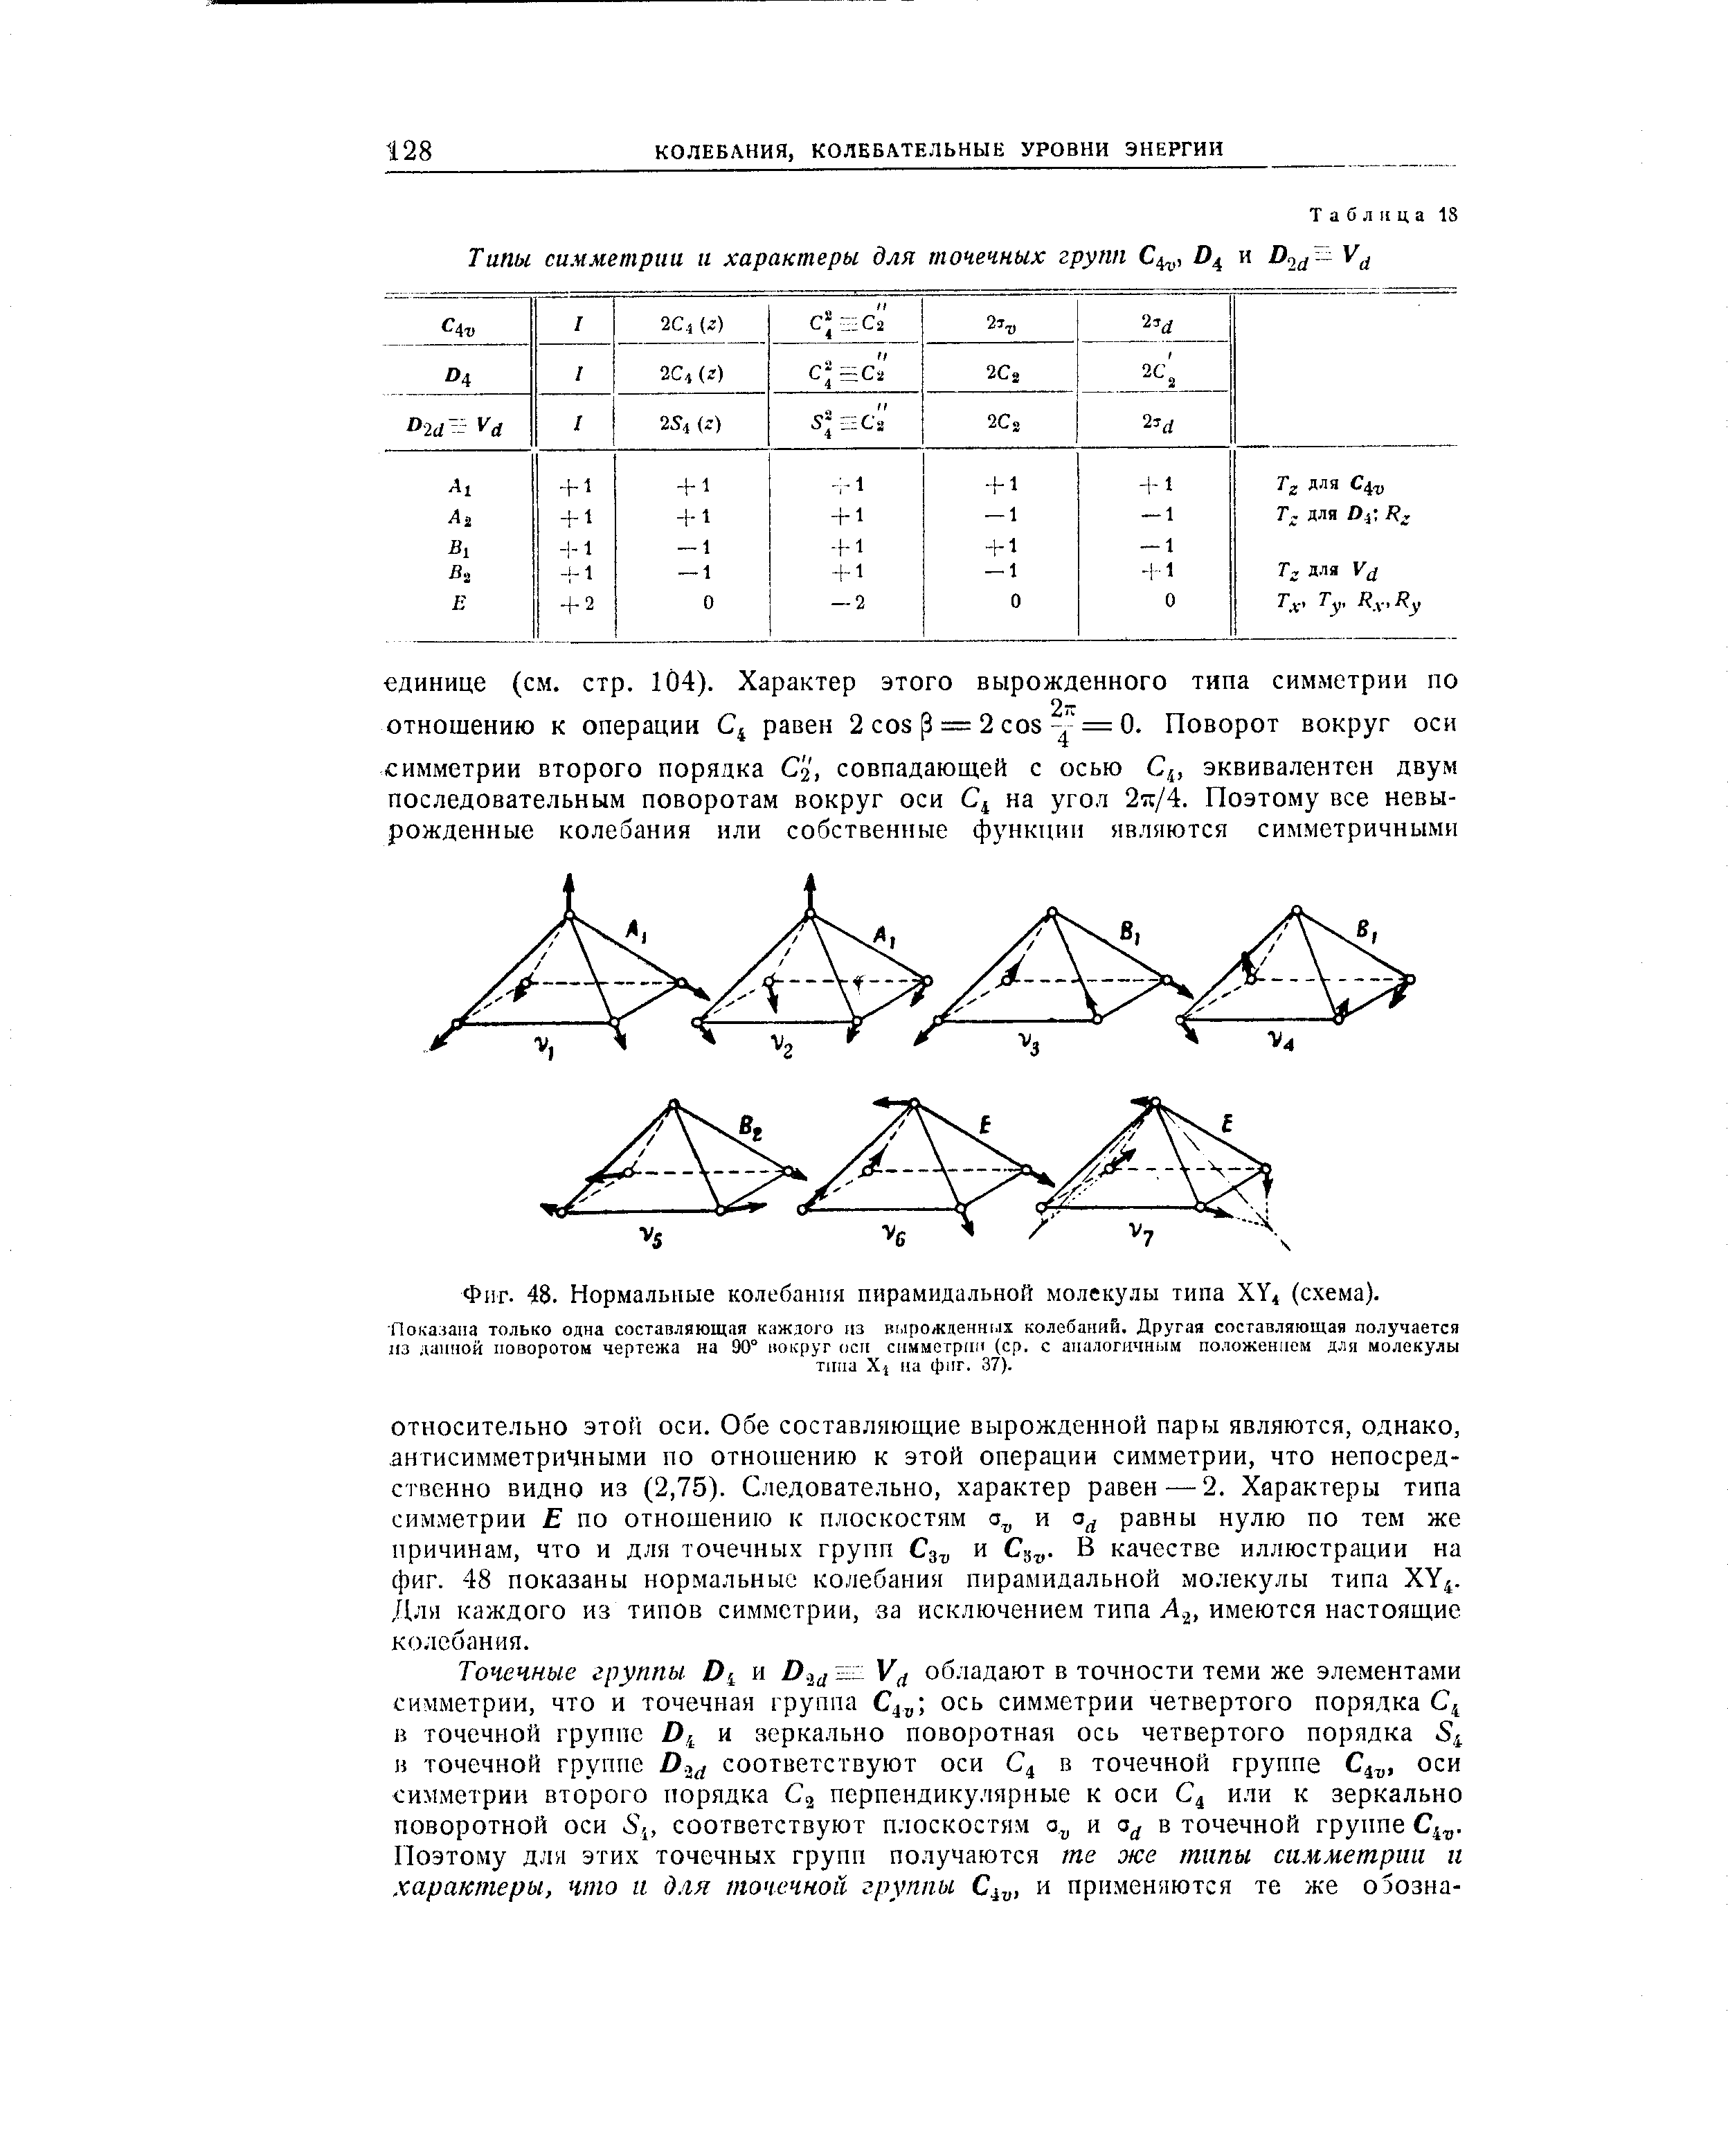 Фиг. 48. Нормальные колебания пирамидальной молекулы типа ХУ, (схема).
